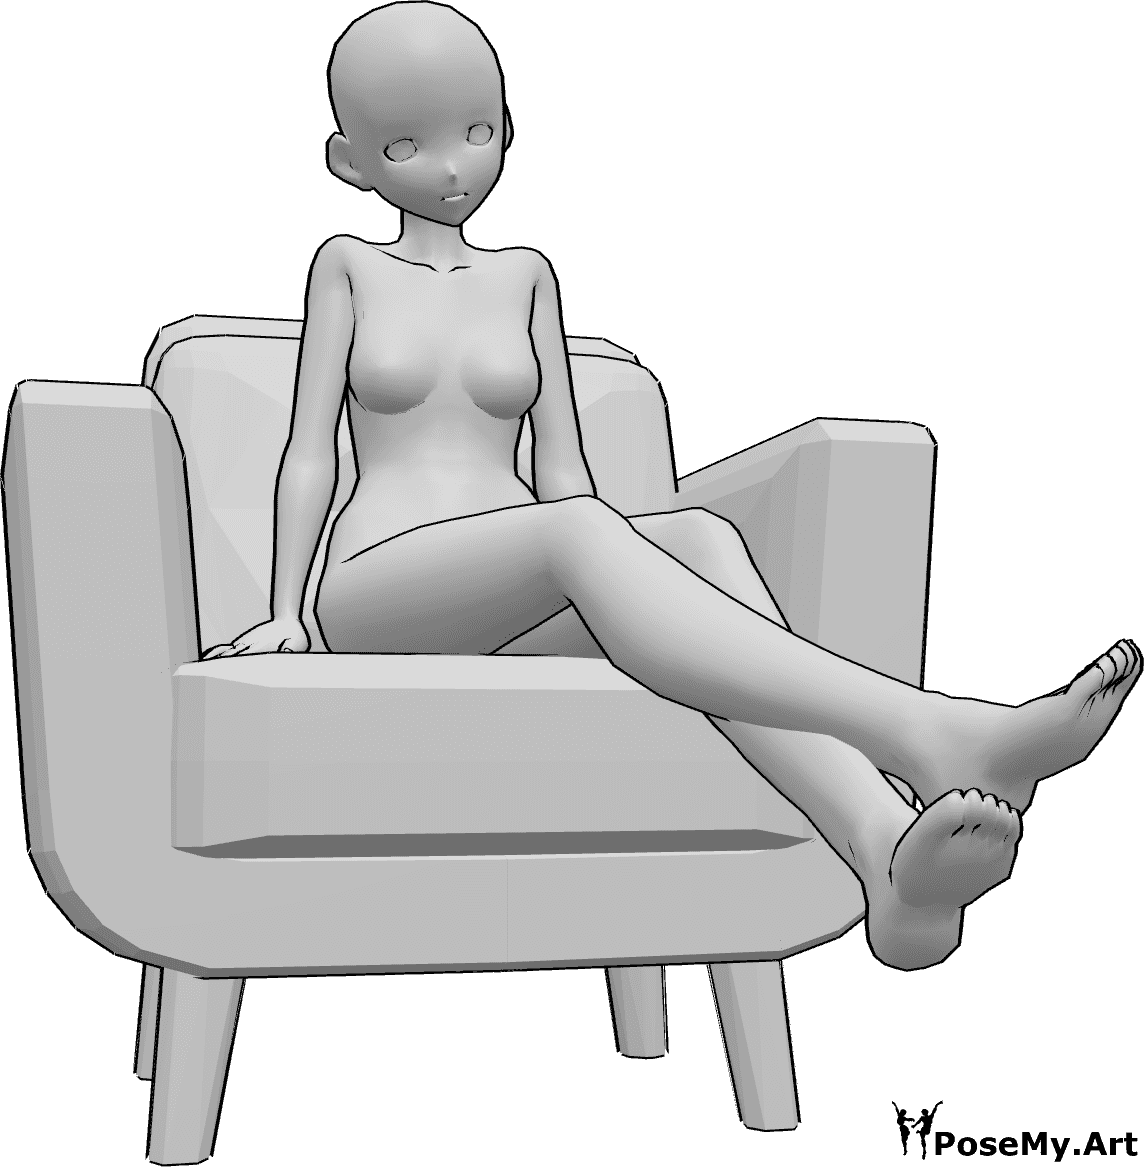 Riferimento alle pose- Posa antropomorfa con gambe sollevate - La donna Anime è seduta sulla poltrona e alza le gambe.